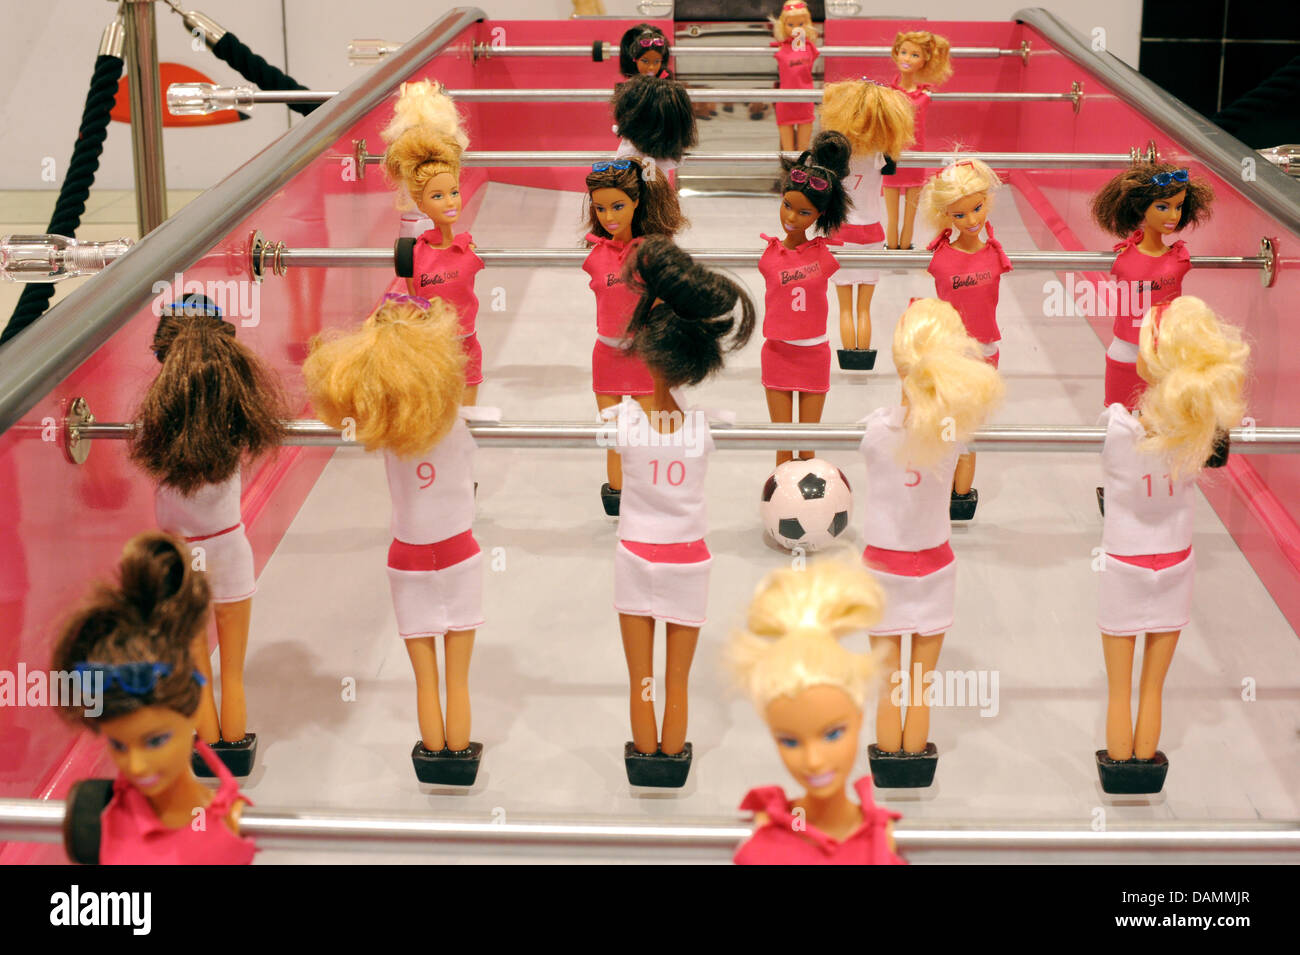 Die 20.000 Euro special Edition eine Barbie-Puppe-Tischfußball steht am  Einkaufszentrum KaDeWe in Berlin, Deutschland, 23. Juni 2011. Anlässlich  der bevorstehenden FIFA Frauen WM, ein Spielzeug-Hersteller übergroße  Tischfußball hat wurde getauft ...